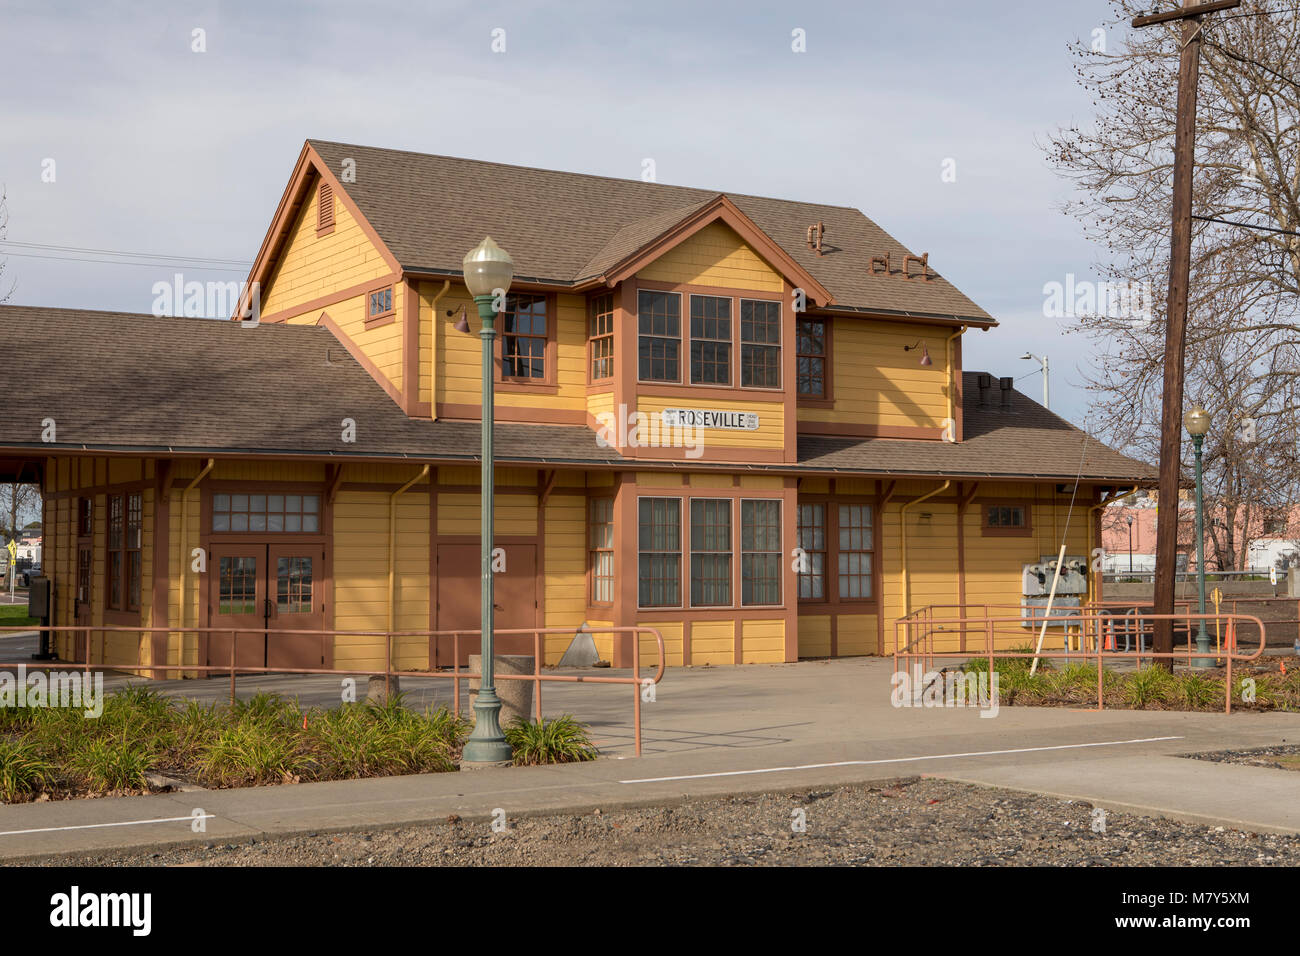 Storica stazione ferroviaria in Roseville California. Ordinato e pulito in legno edificio del patrimonio nella zona del centro citta'. Foto Stock